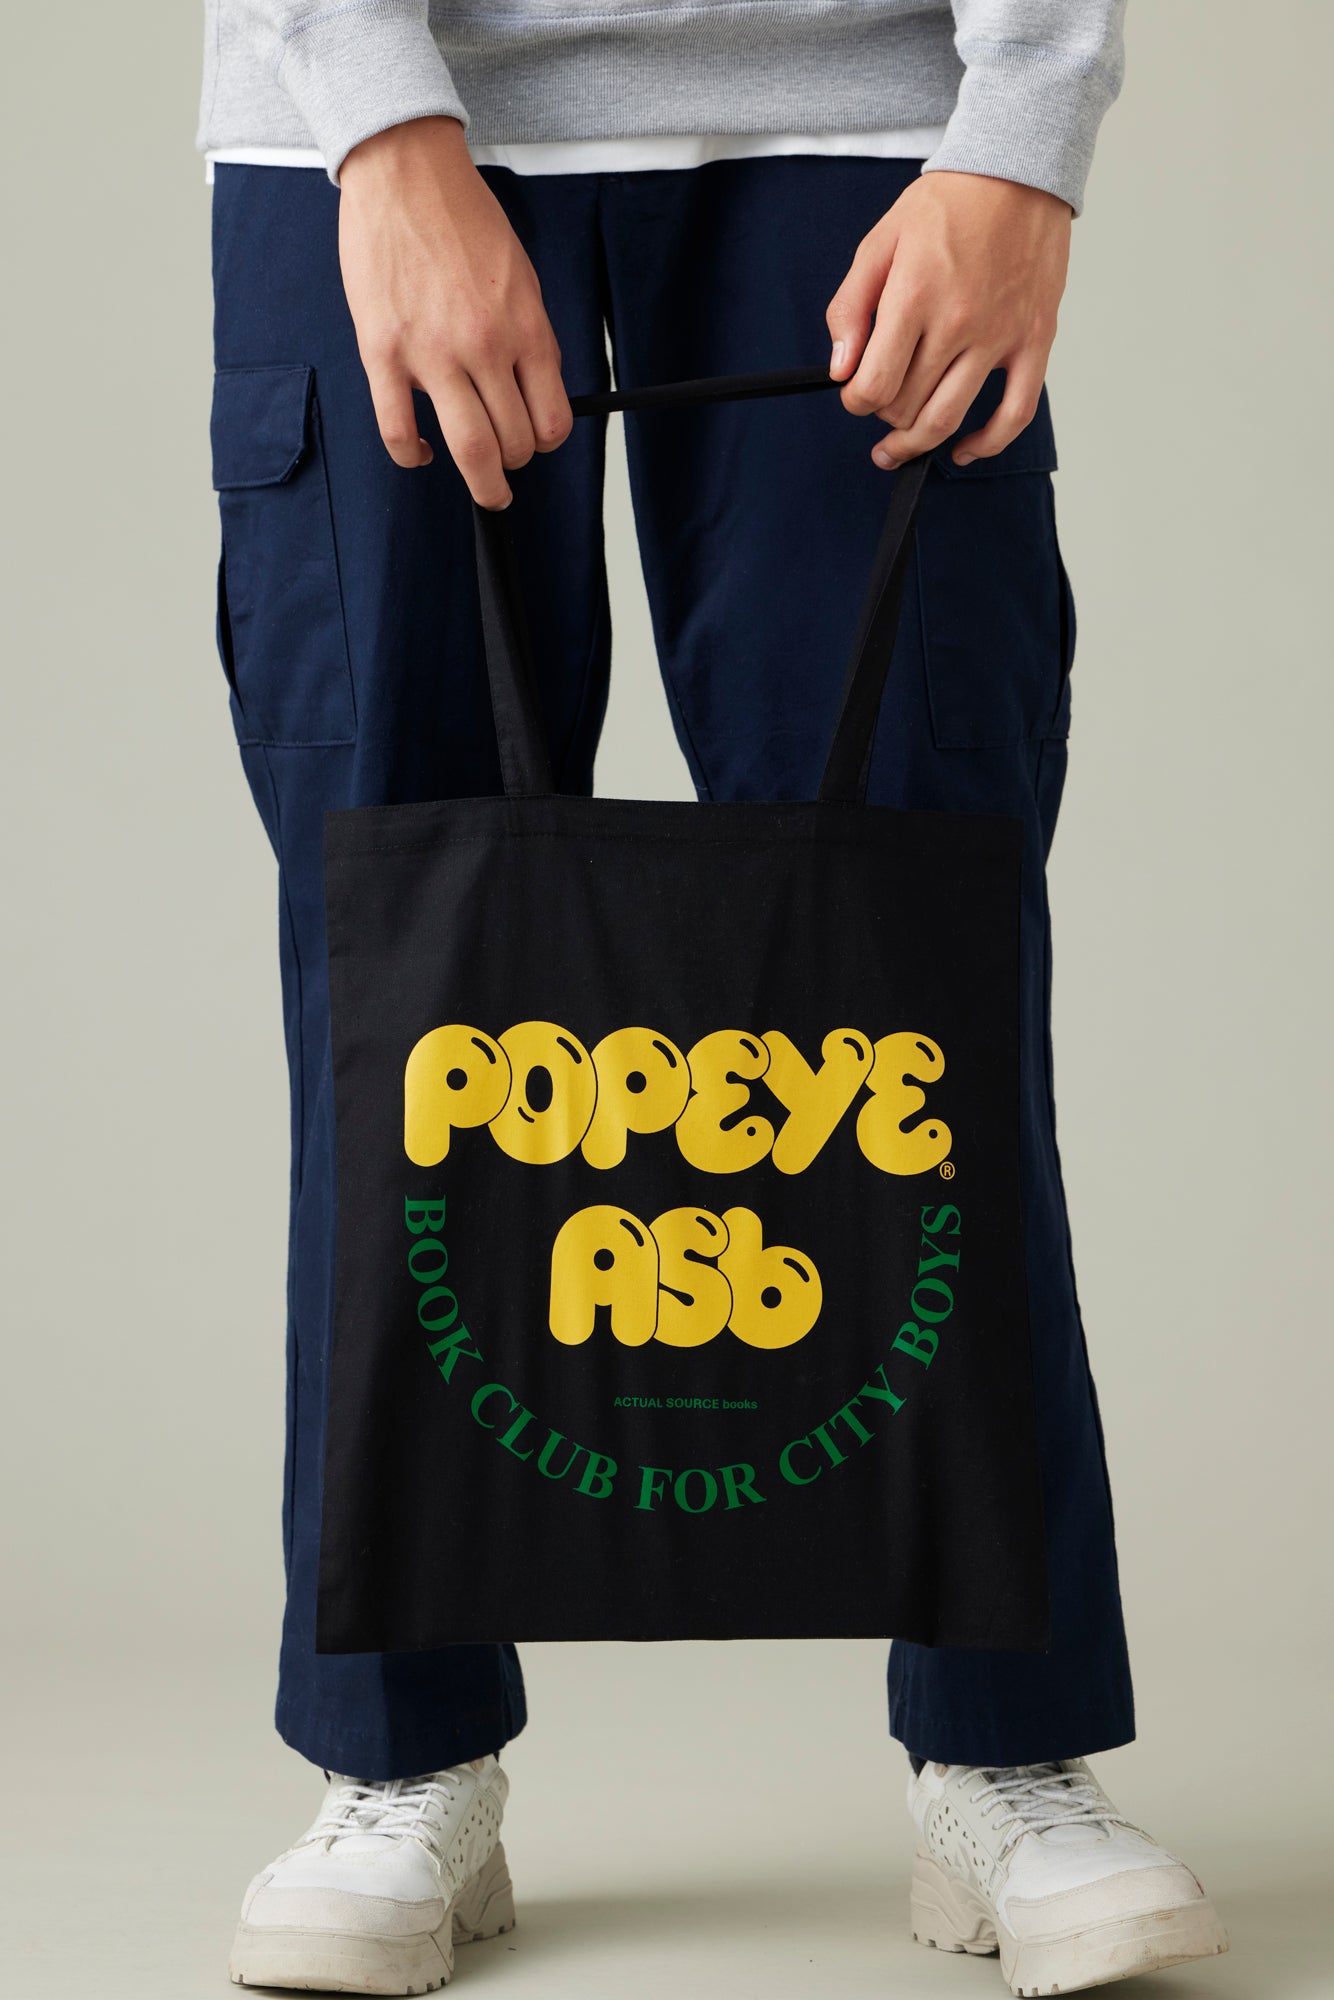 POPEYE BOOK CLUB Tote Bag